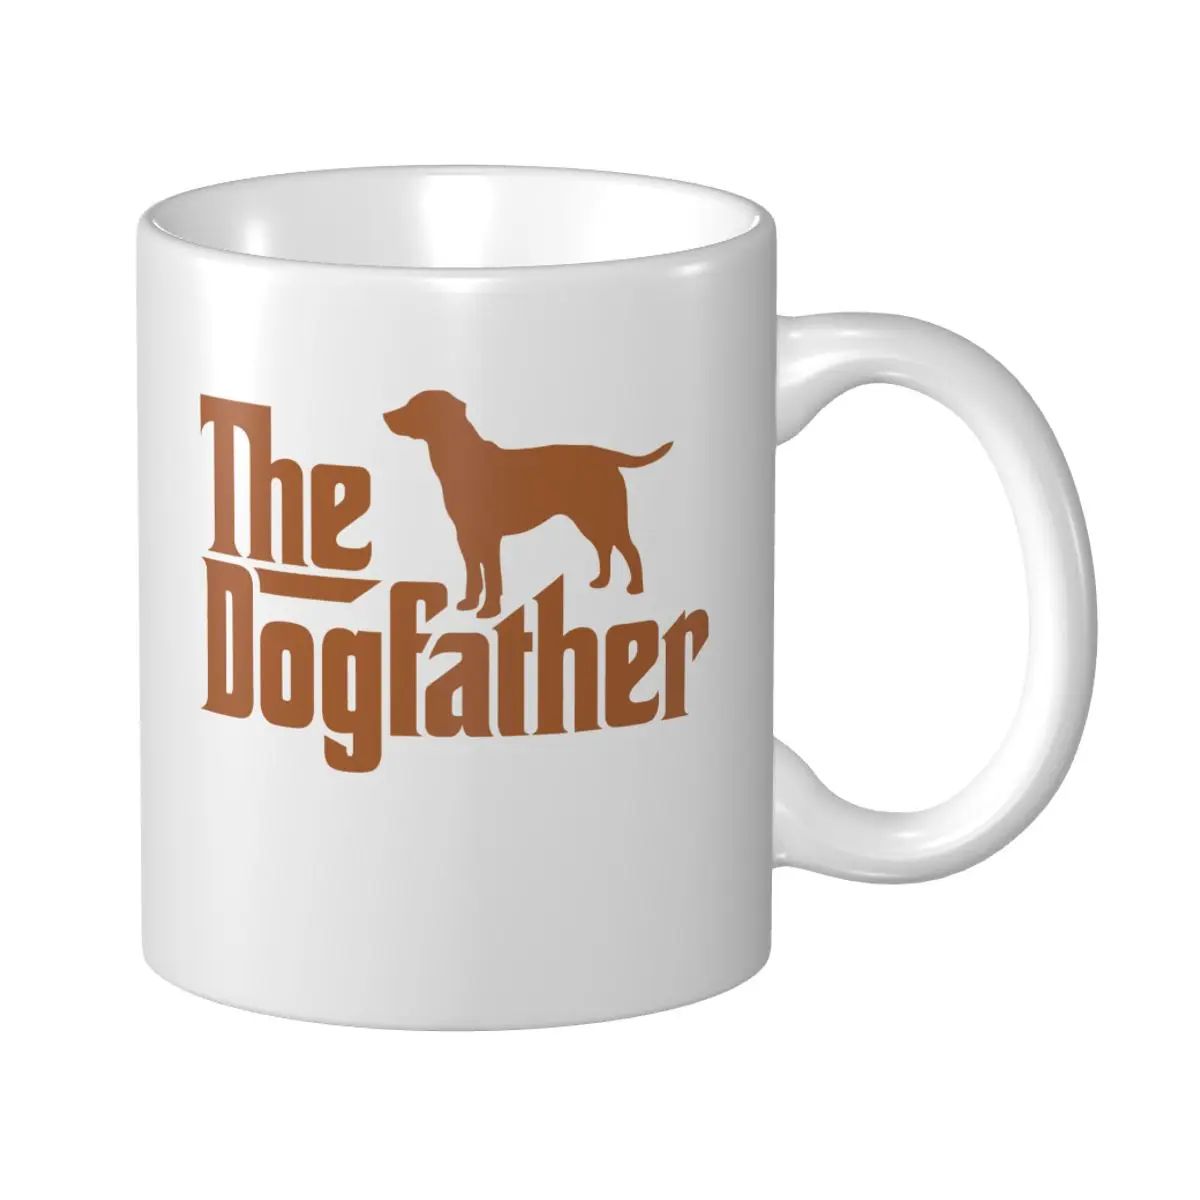 

Кружка Mark Cup с изображением догпада, Лабрадора, ретривера, собаки-владельца, кофейные кружки, кружки для путешествий, для офиса и дома